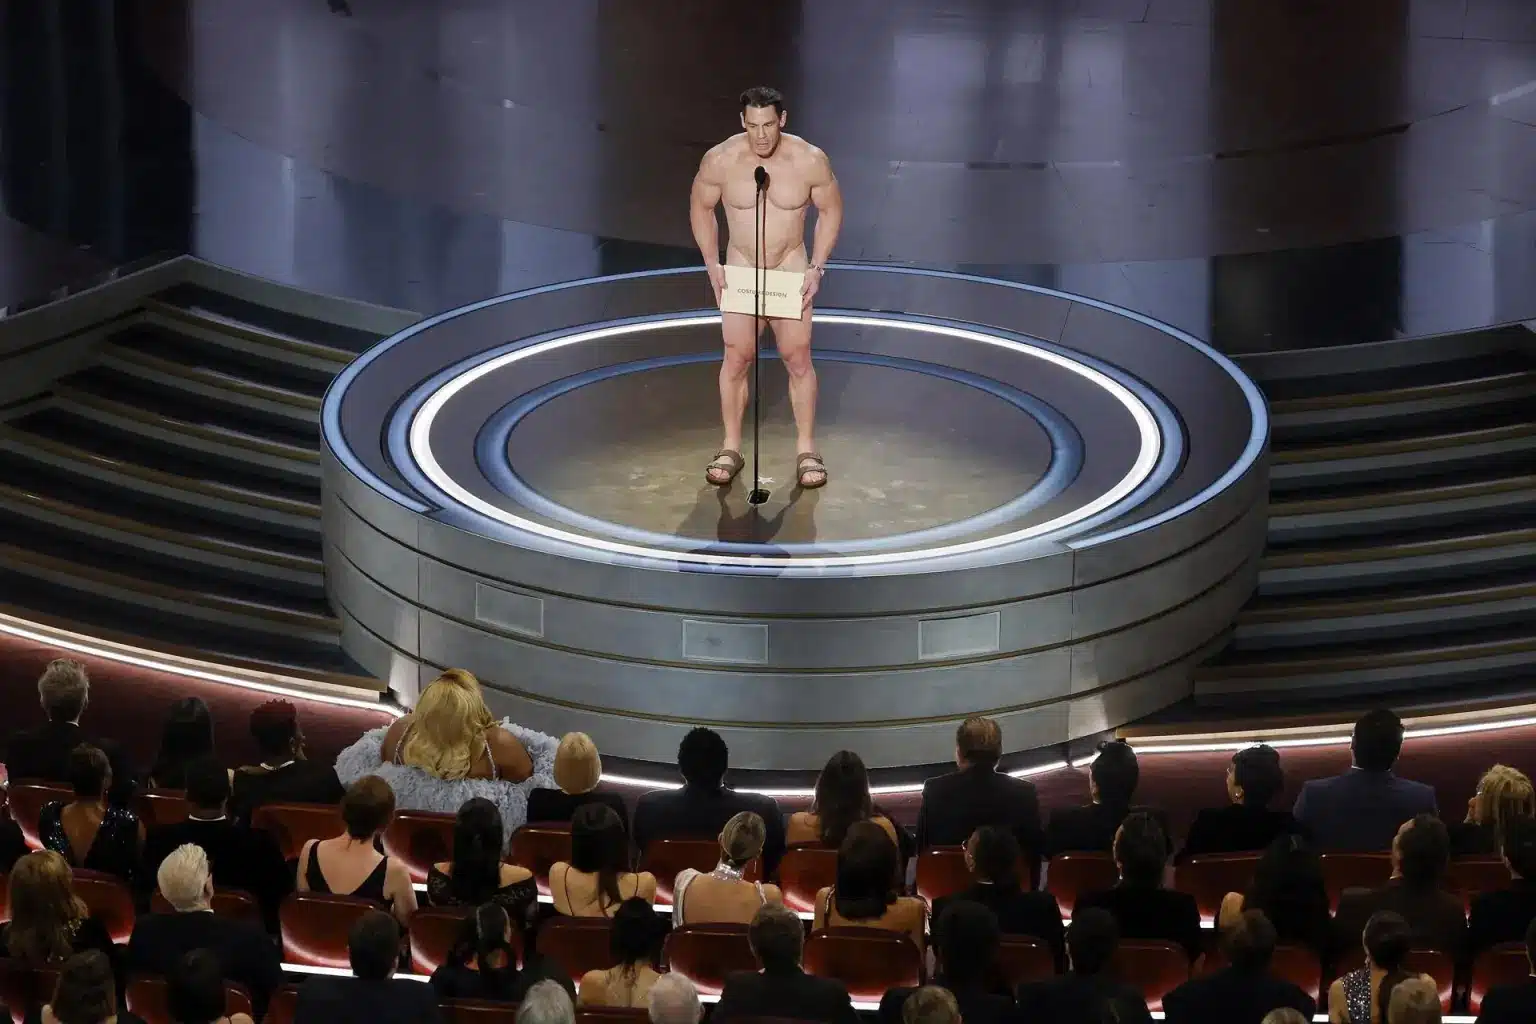 ¡Wow! Desnudo, John Cena presenta el Óscar al mejor vestuario